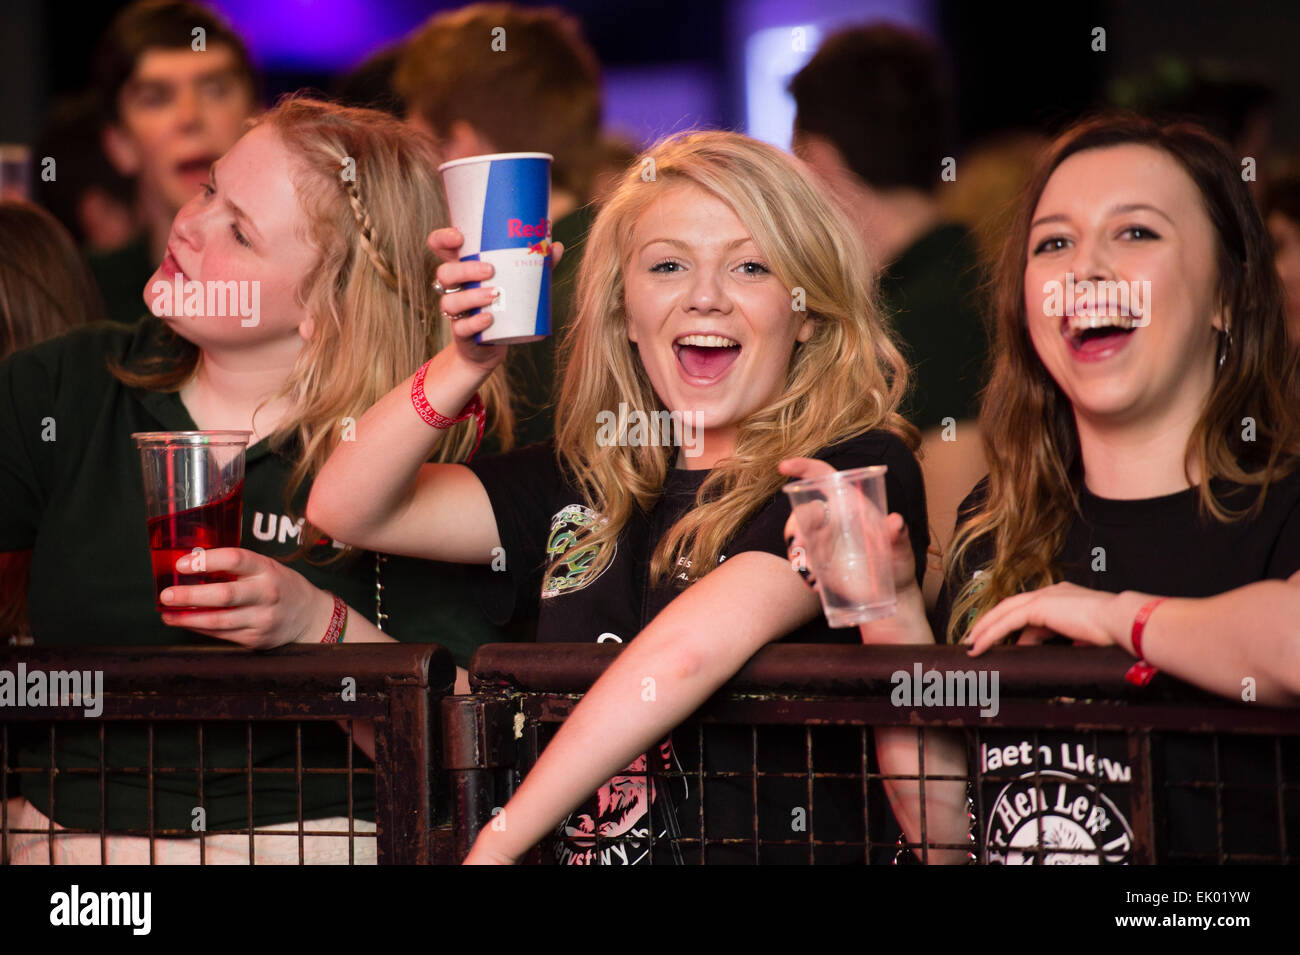 Partylöwen: junge weibliche Frau College-Studenten amüsieren sich lachen und trinken auf einer walisischen Sprache Rock Musik Konzert Party tanzen die ganze Nacht bei Aberystwyth University Studenten Union. Stockfoto